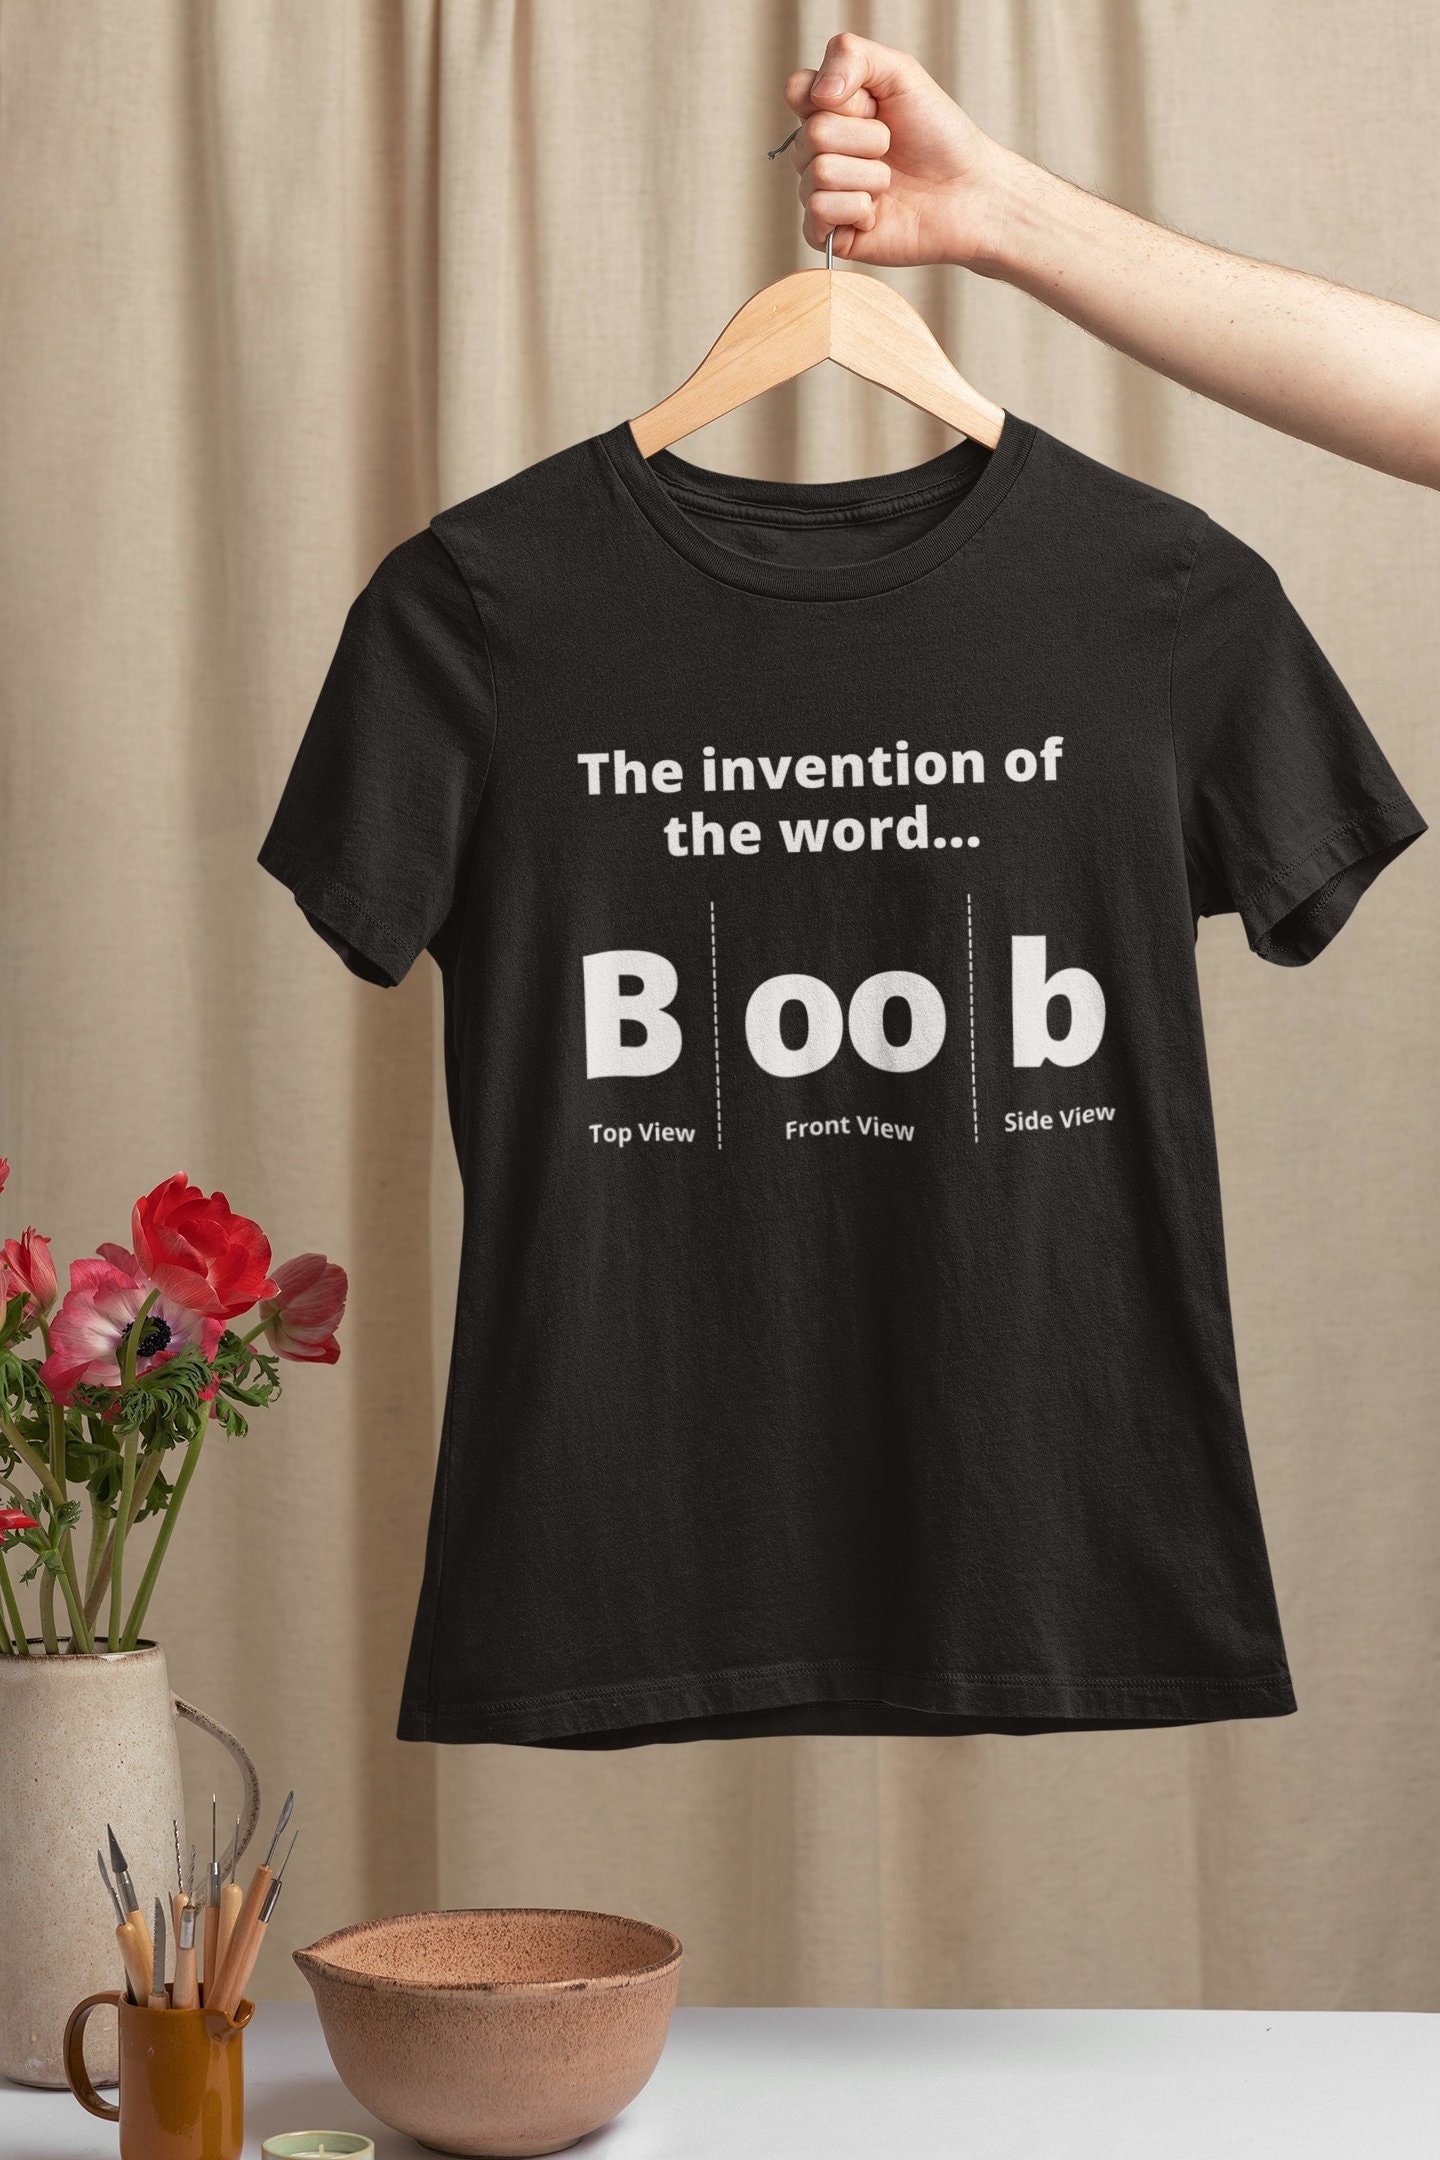 Boob Tshirts 